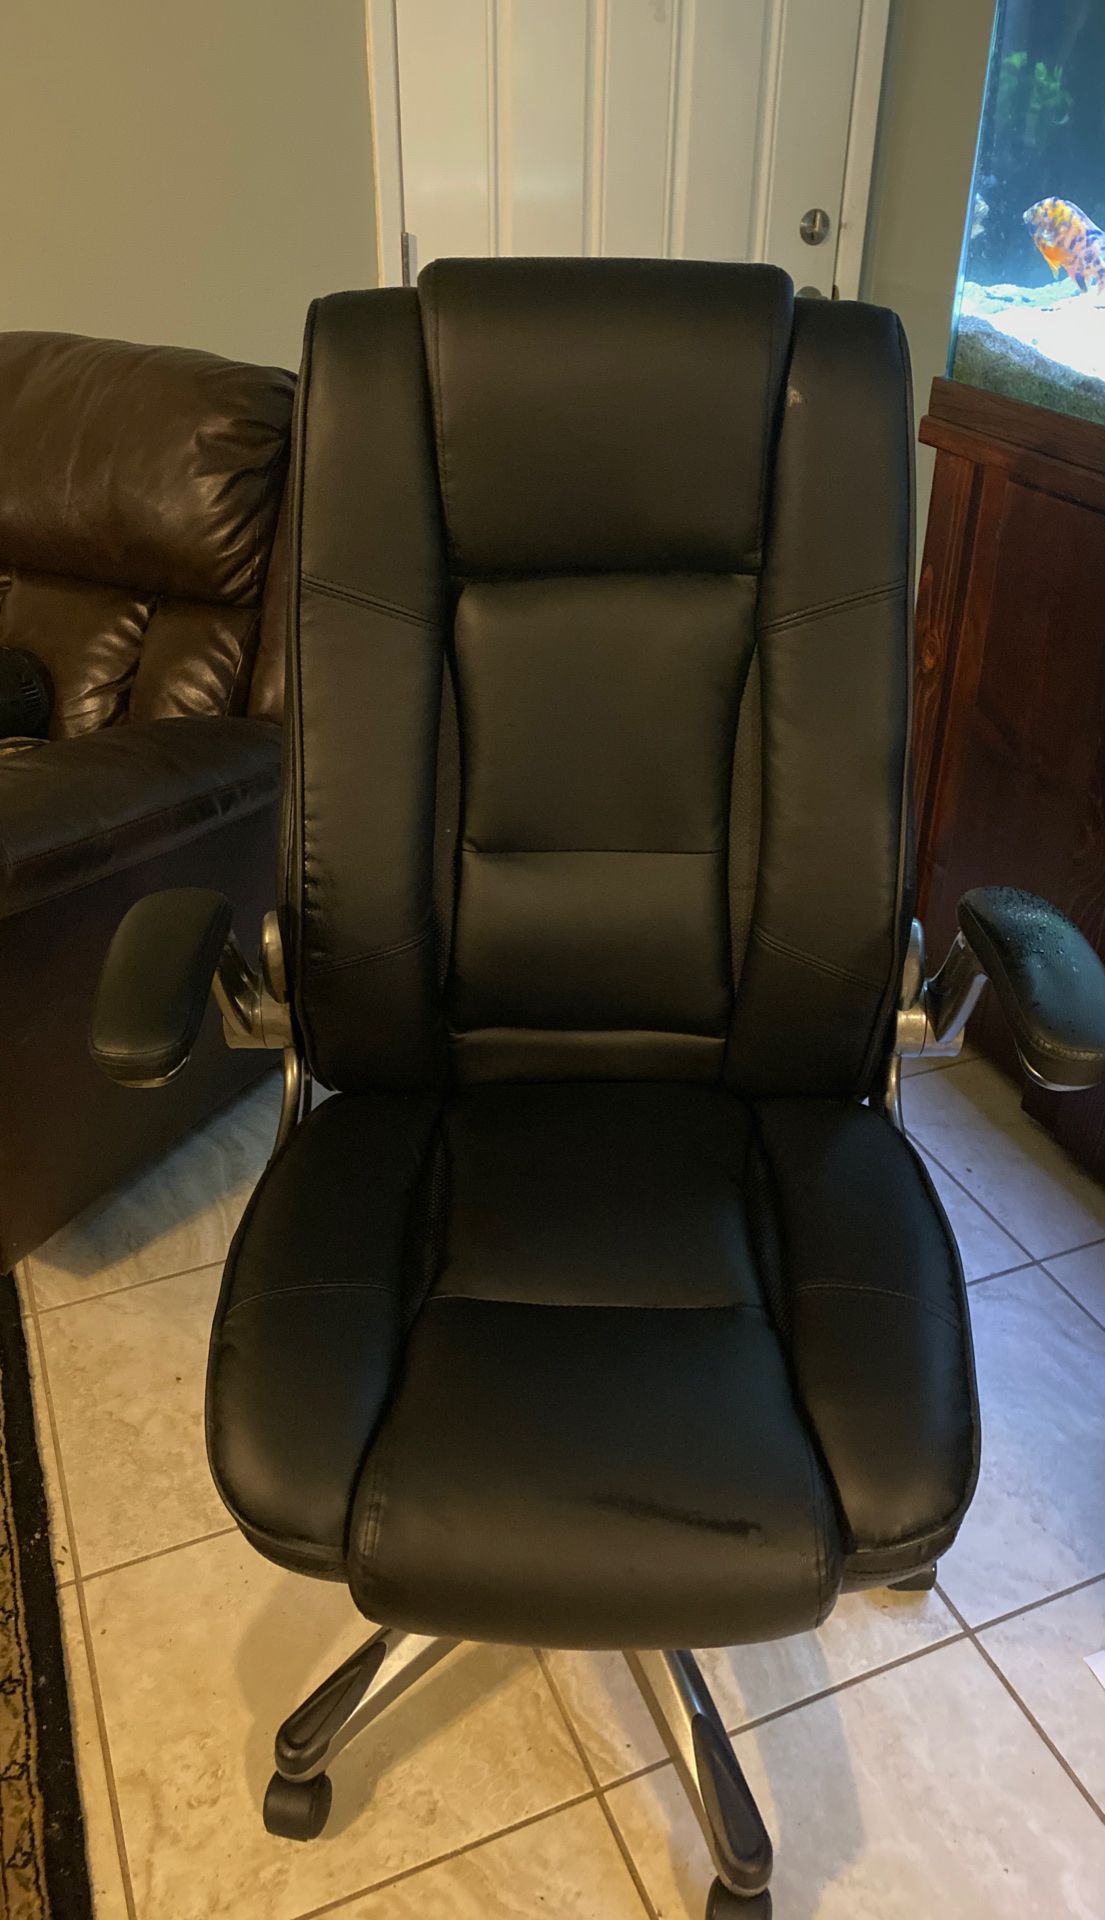 Very nice computer chair